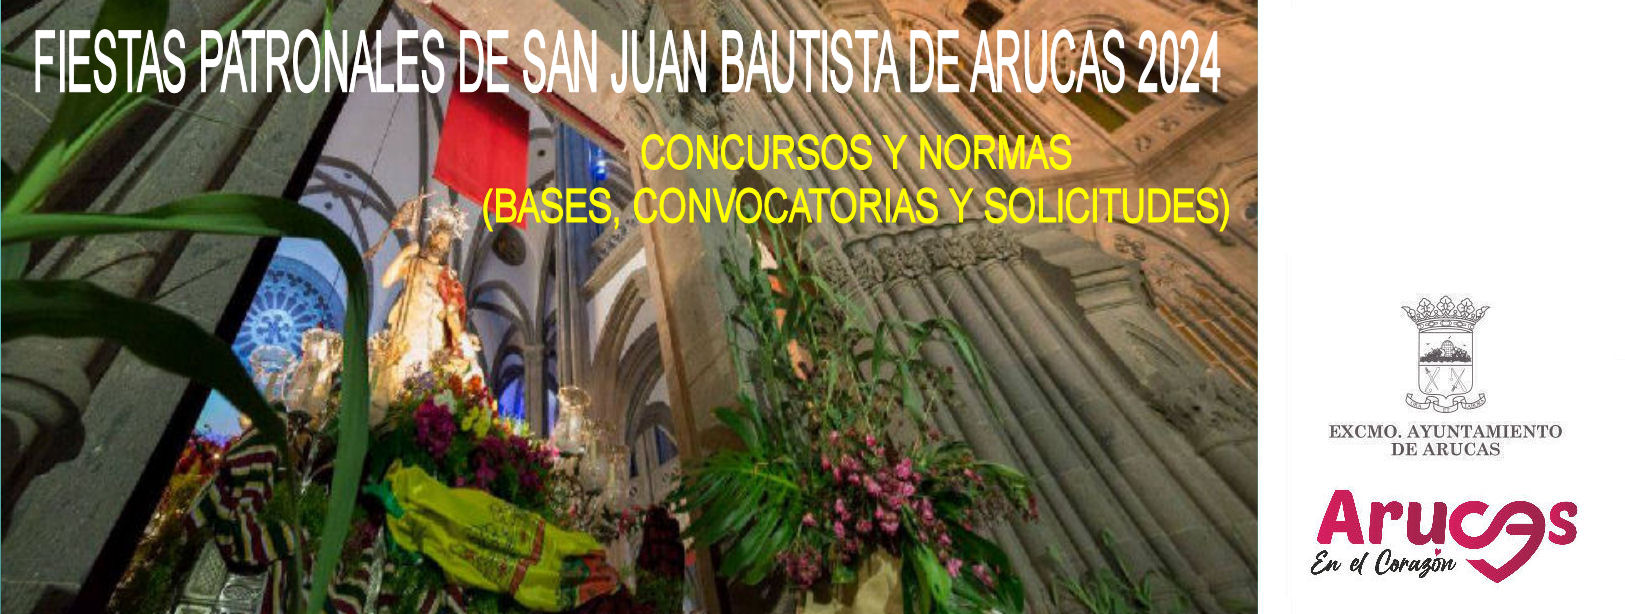 CONCURSOS Y NORMAS - FIESTAS PATRONALES DE SAN JUAN BAUTISTA DE ARUCAS 2024